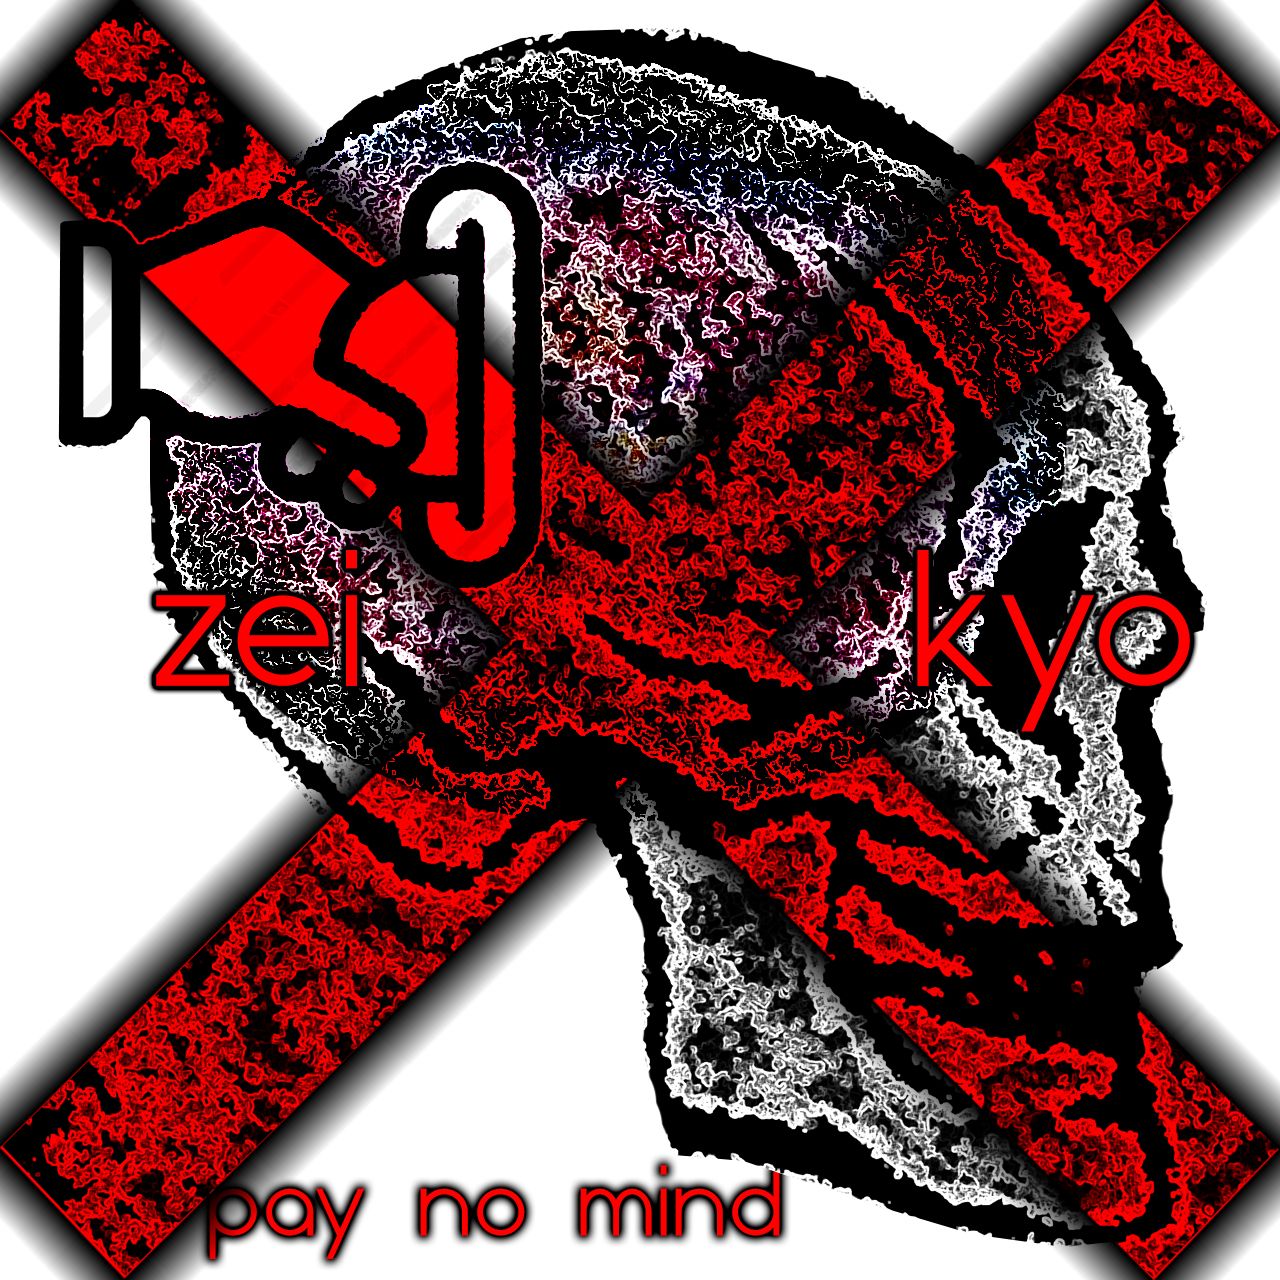 Letöltés pay no mind (ft Kyo)(prod. Zei x Prxd. Jay)